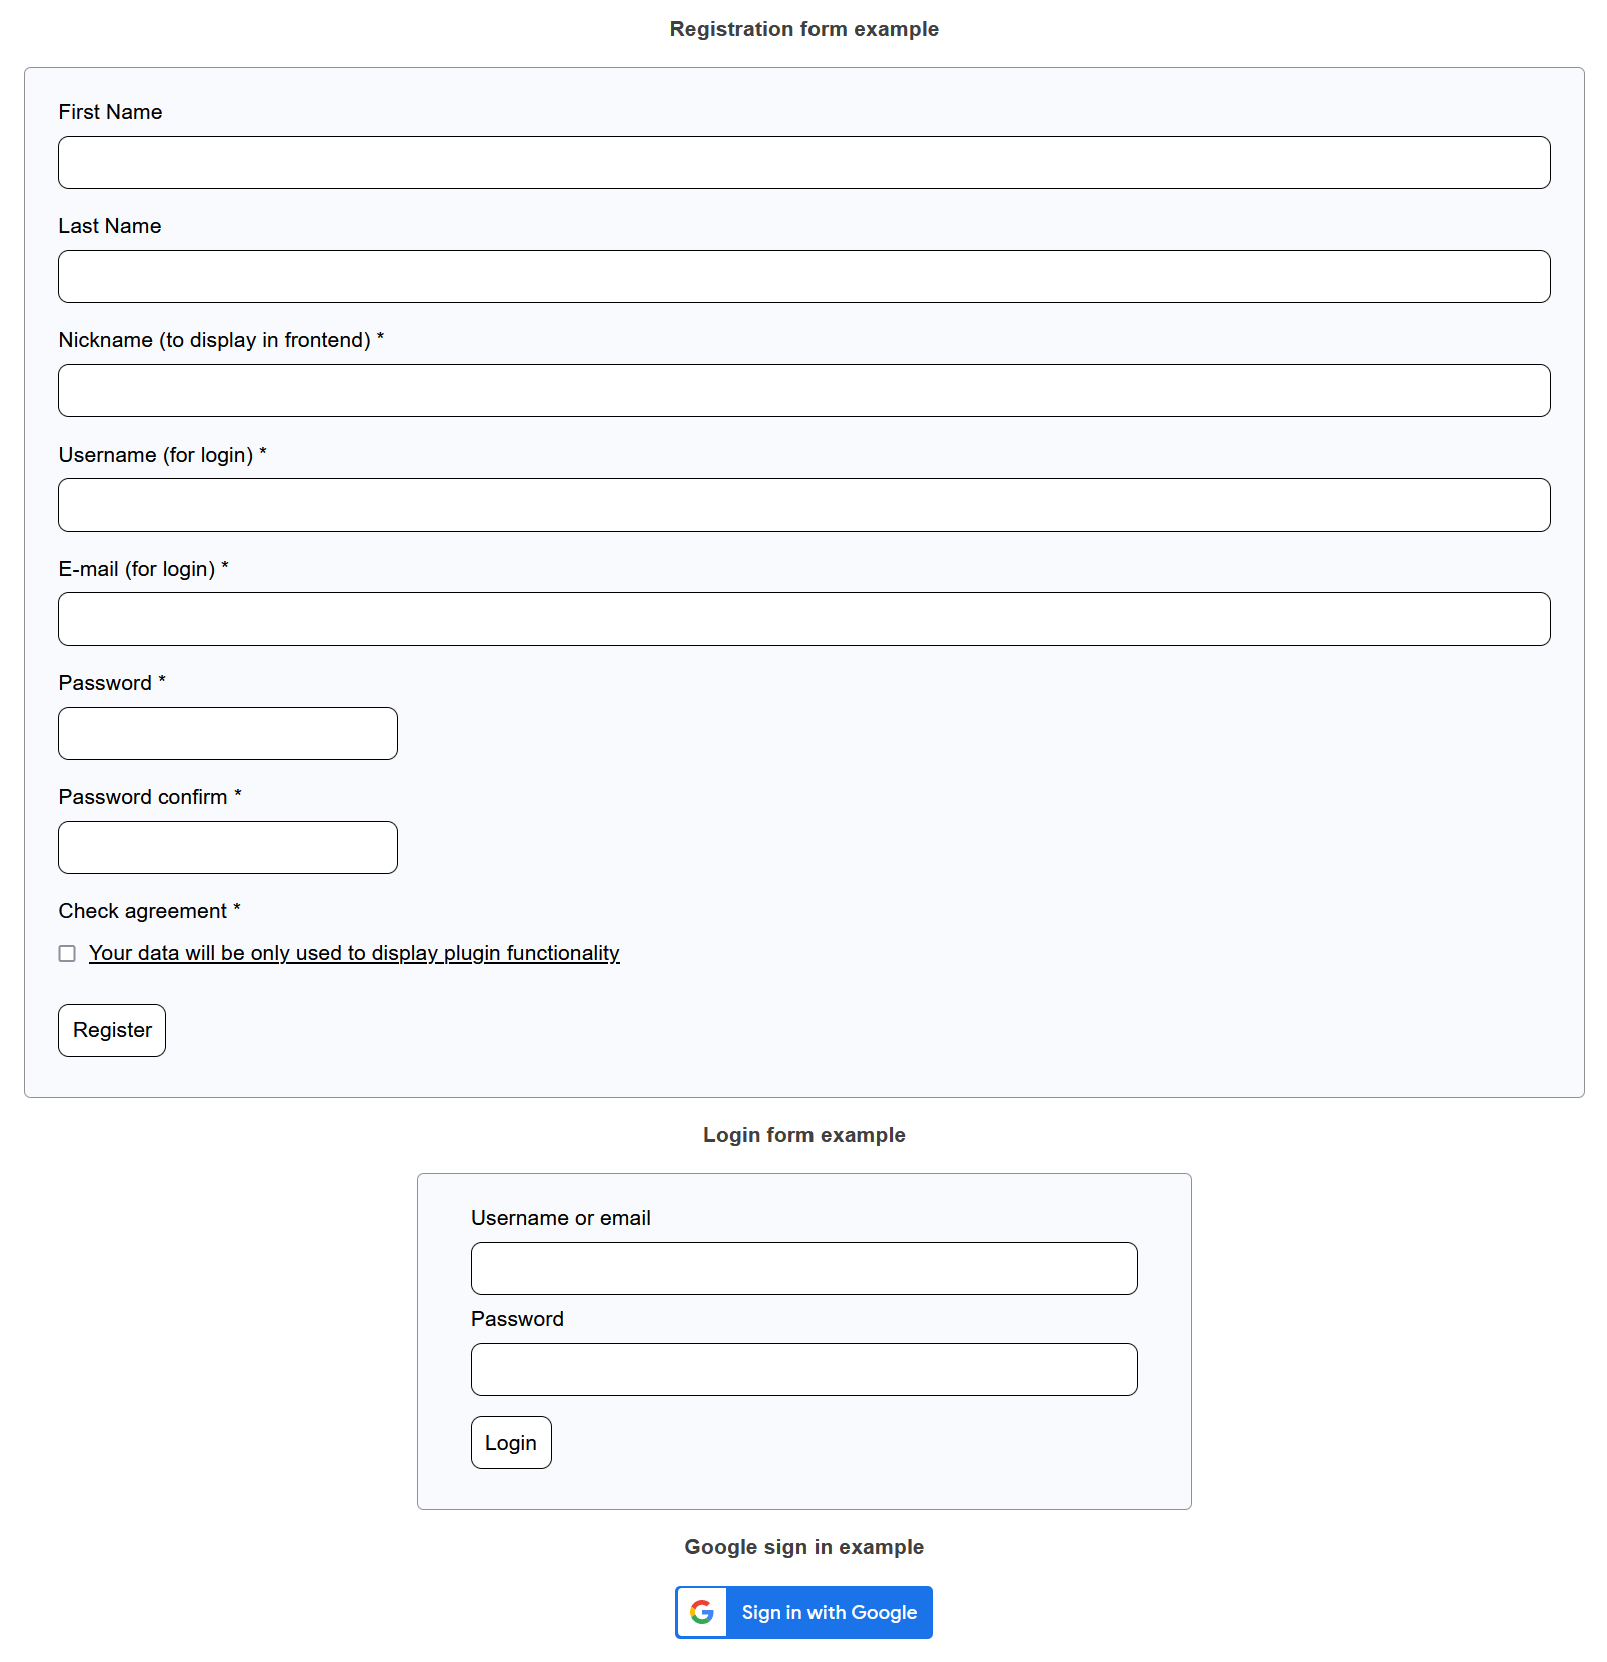 Registration form, login form and Google sign in